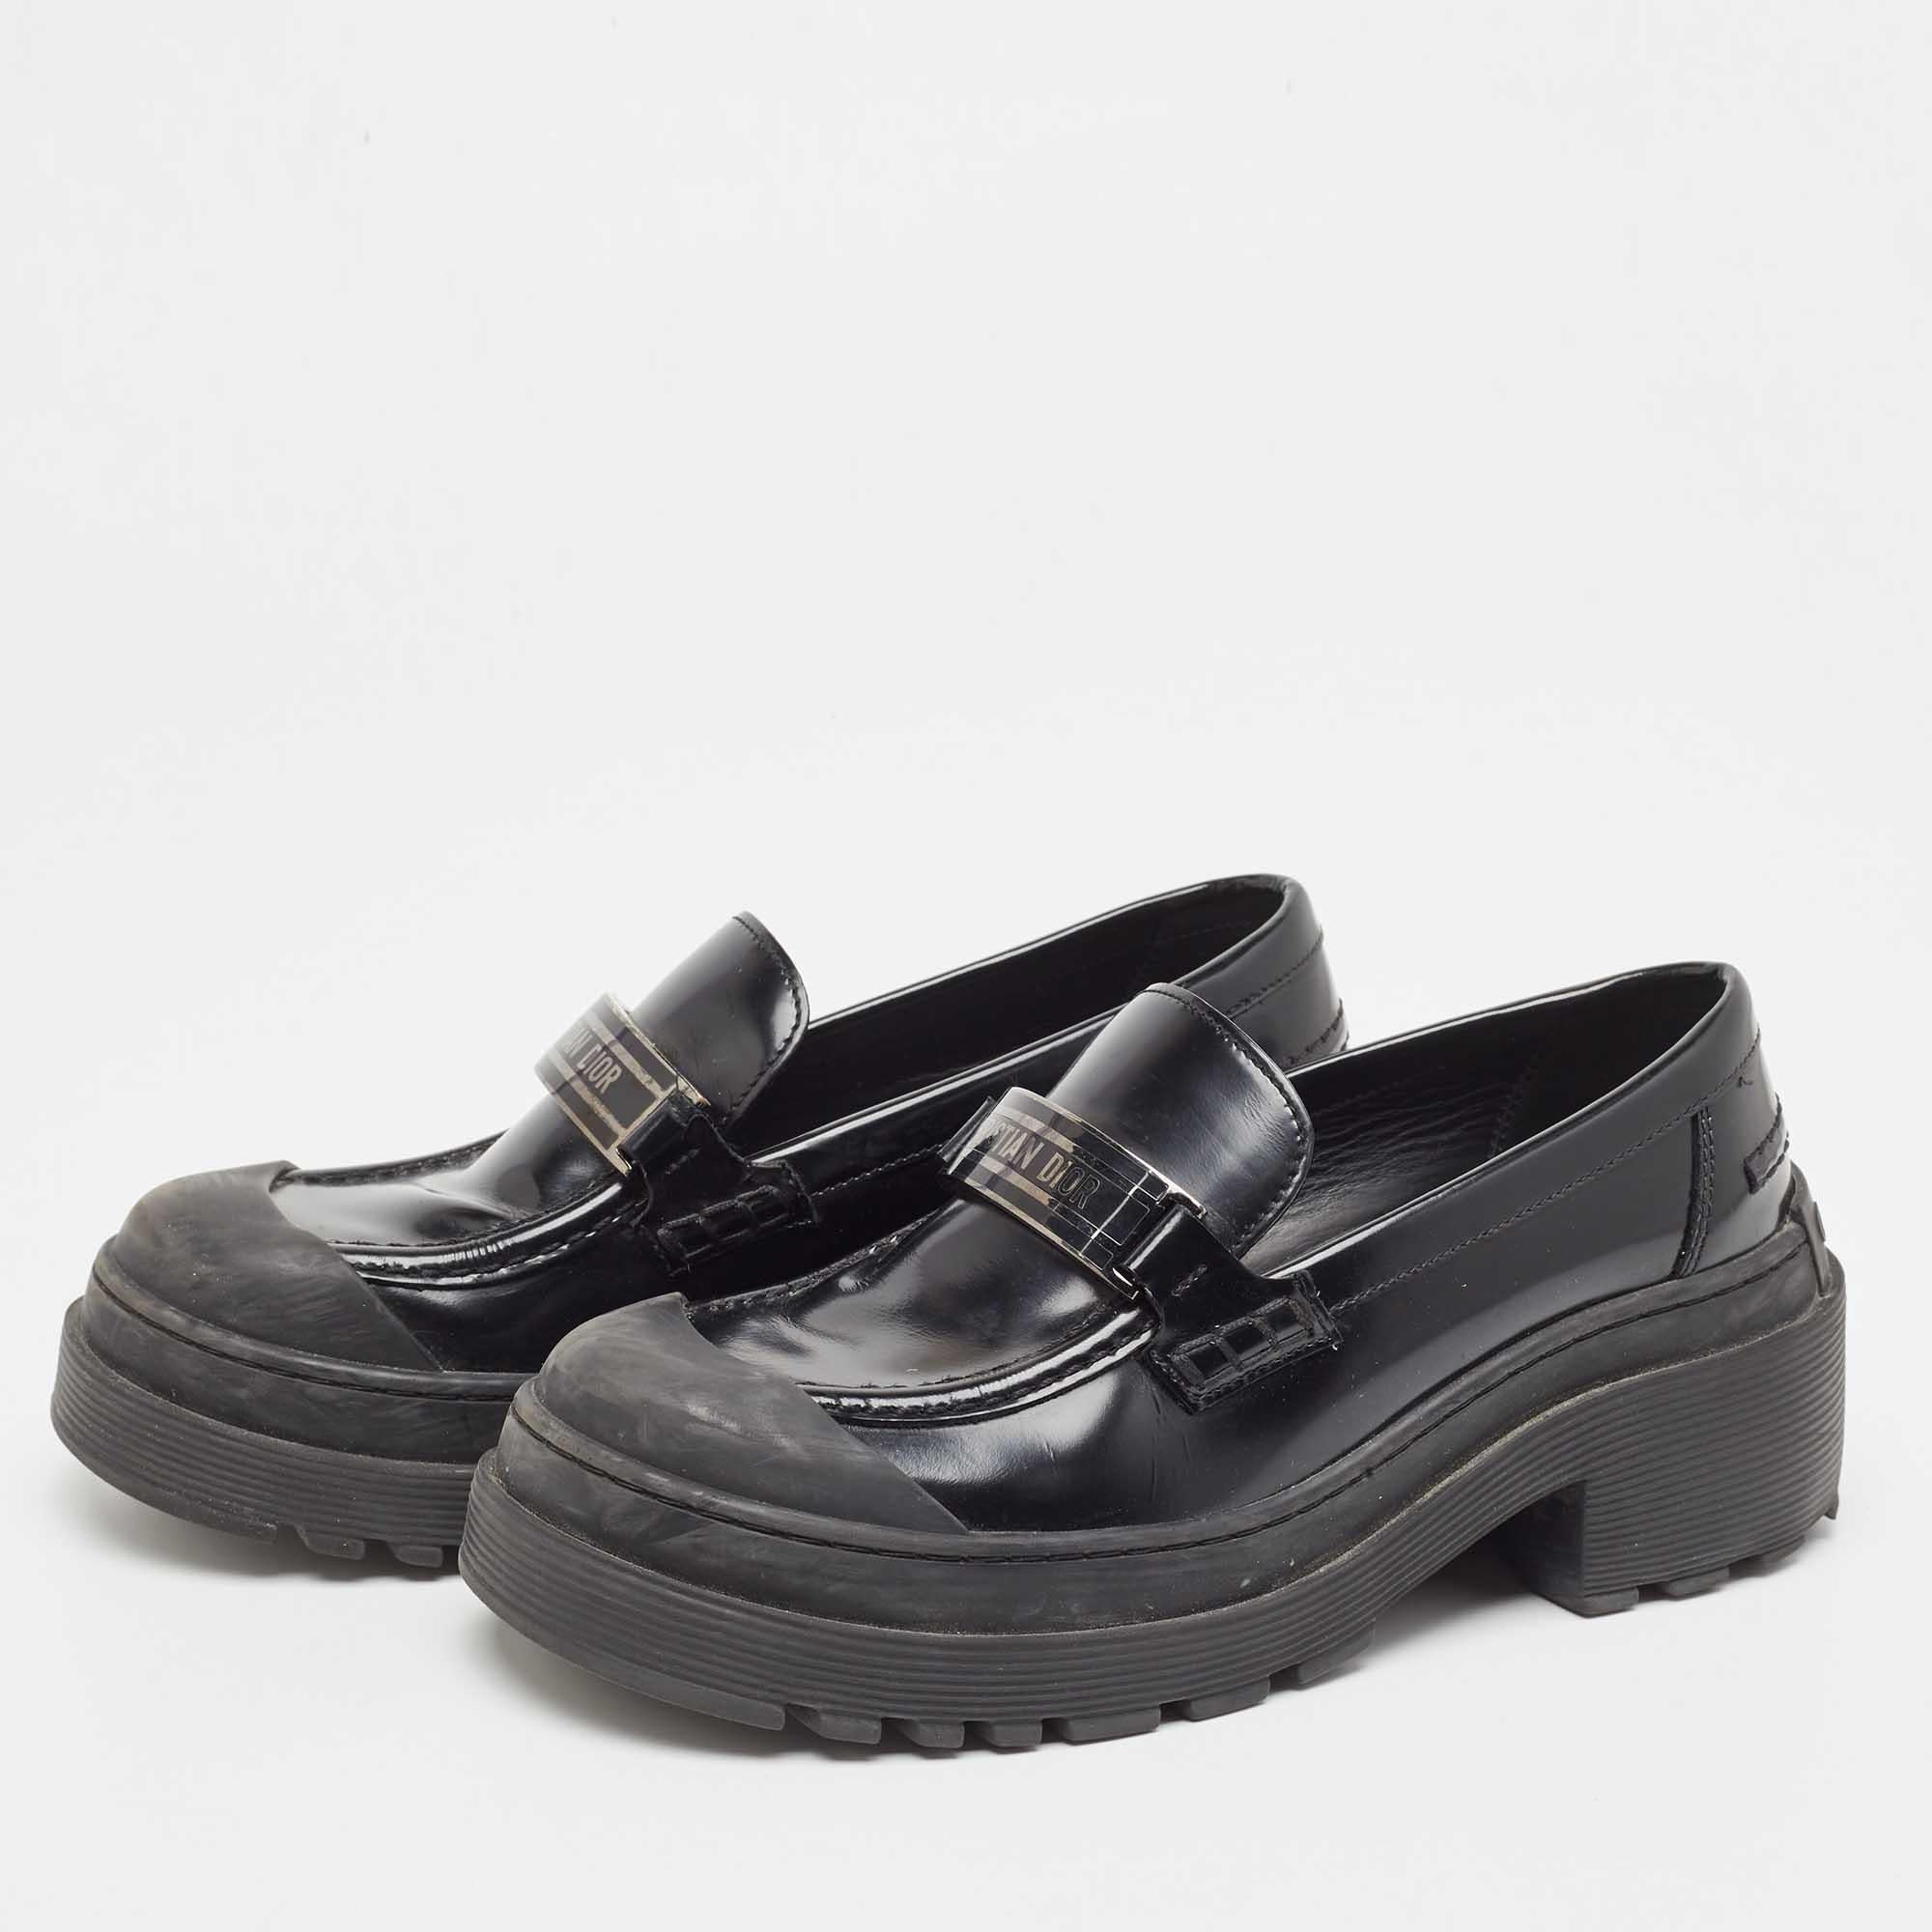 Dior Black Leather Slip On Loafers Size 36 In Fair Condition For Sale In Dubai, Al Qouz 2